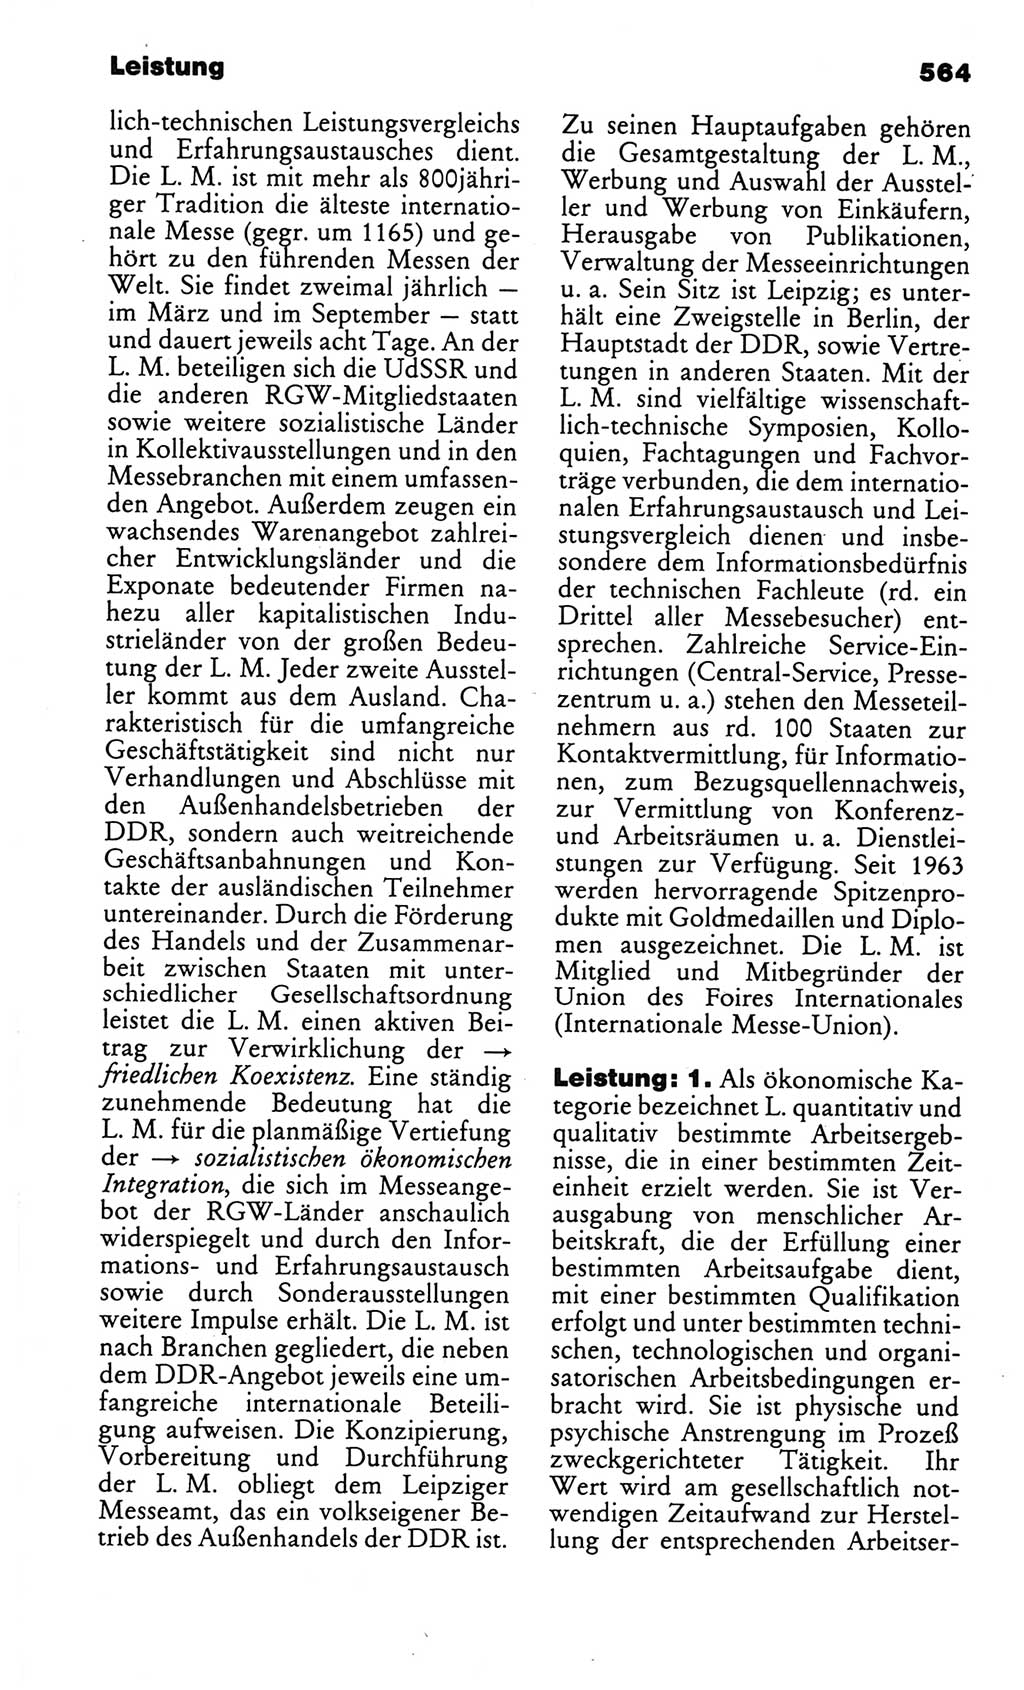 Kleines politisches Wörterbuch [Deutsche Demokratische Republik (DDR)] 1986, Seite 564 (Kl. pol. Wb. DDR 1986, S. 564)